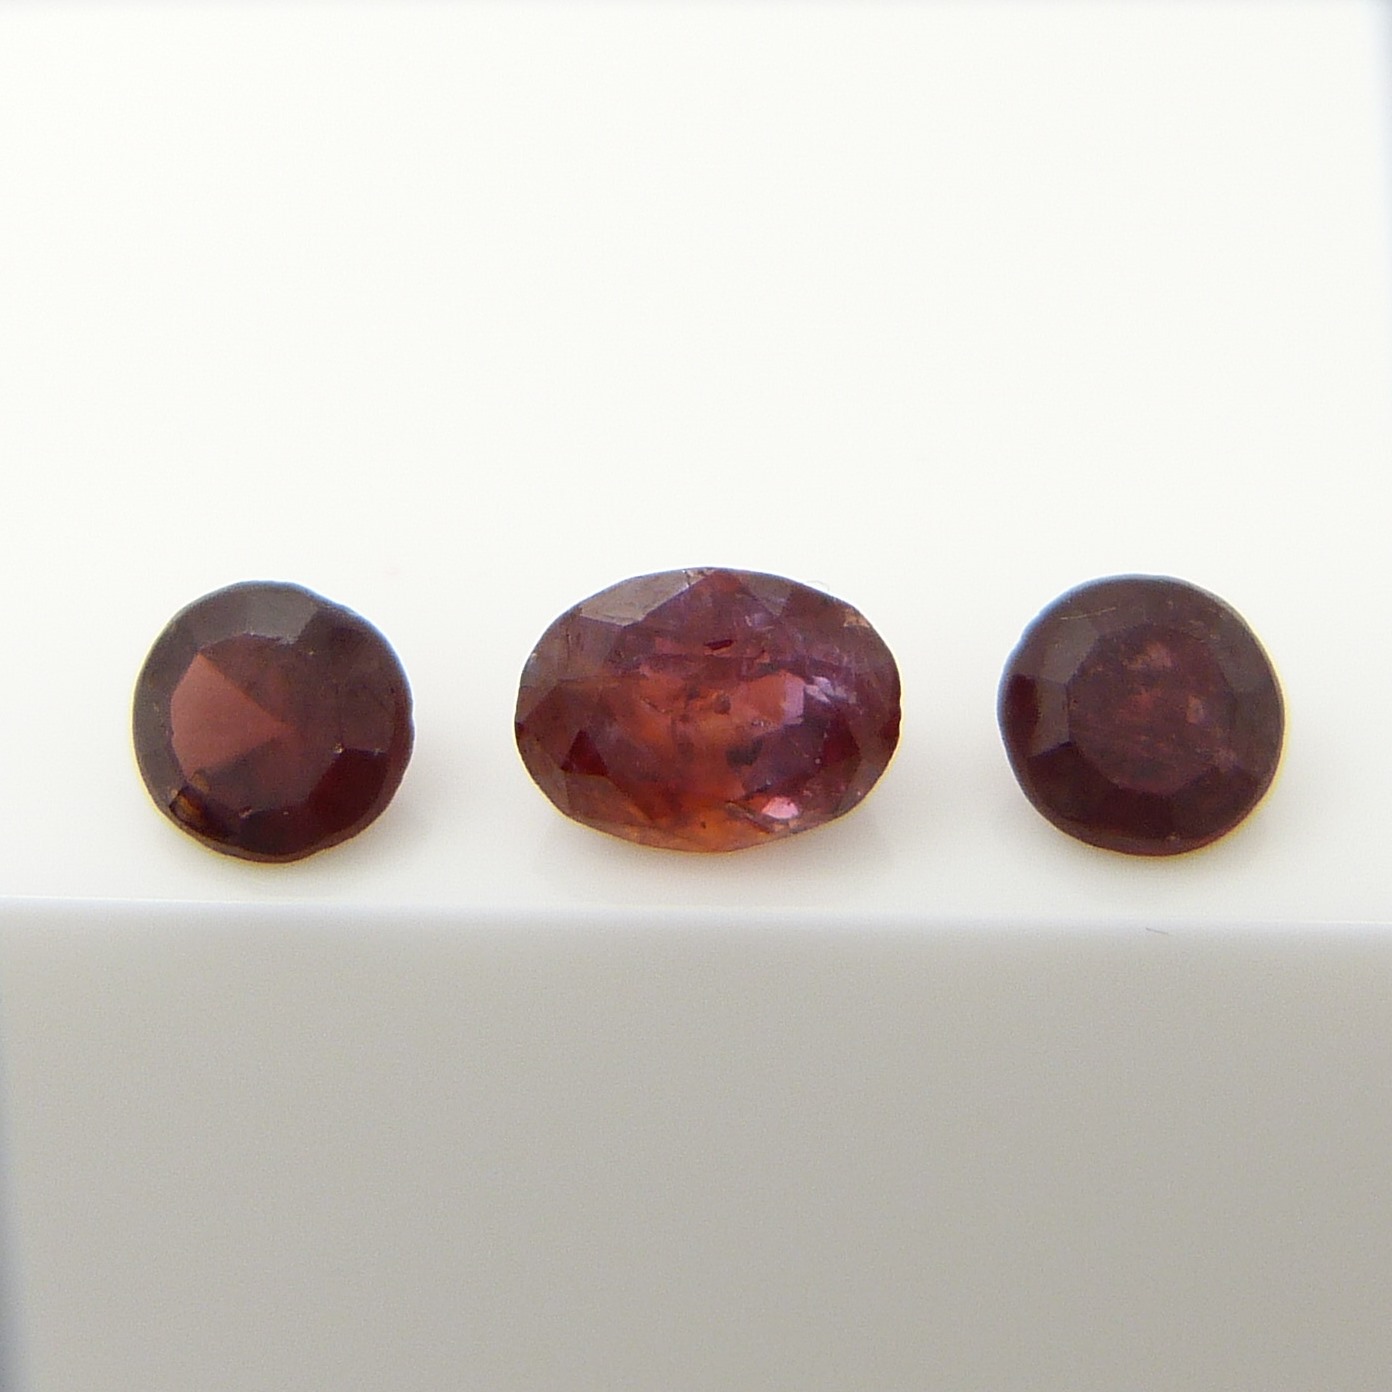 A parcel of 3 red Garnet gemstones, 1.60 carats